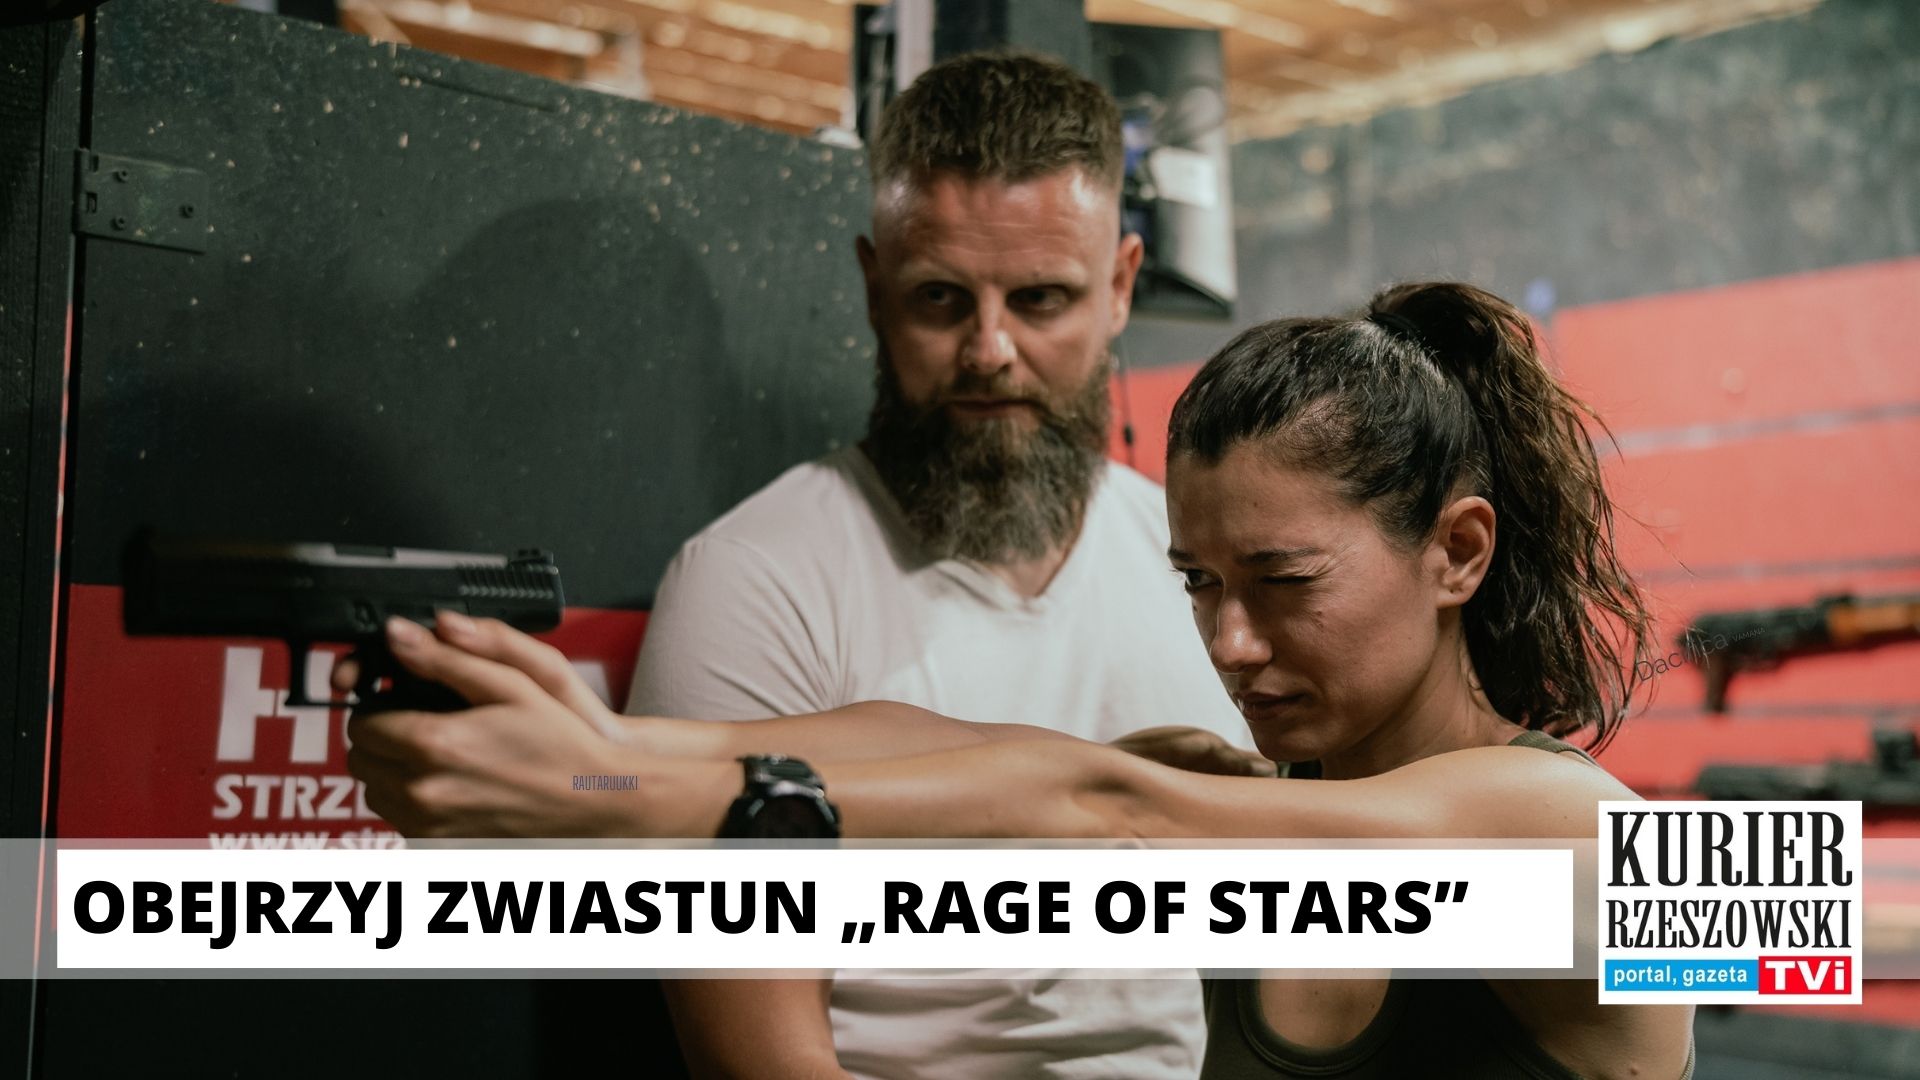 Filmările lungmetrajului „Star Fury” de Lucas Roeg, care a fost filmat la Rzeszow, s-au încheiat!  Trailerul său este disponibil online!